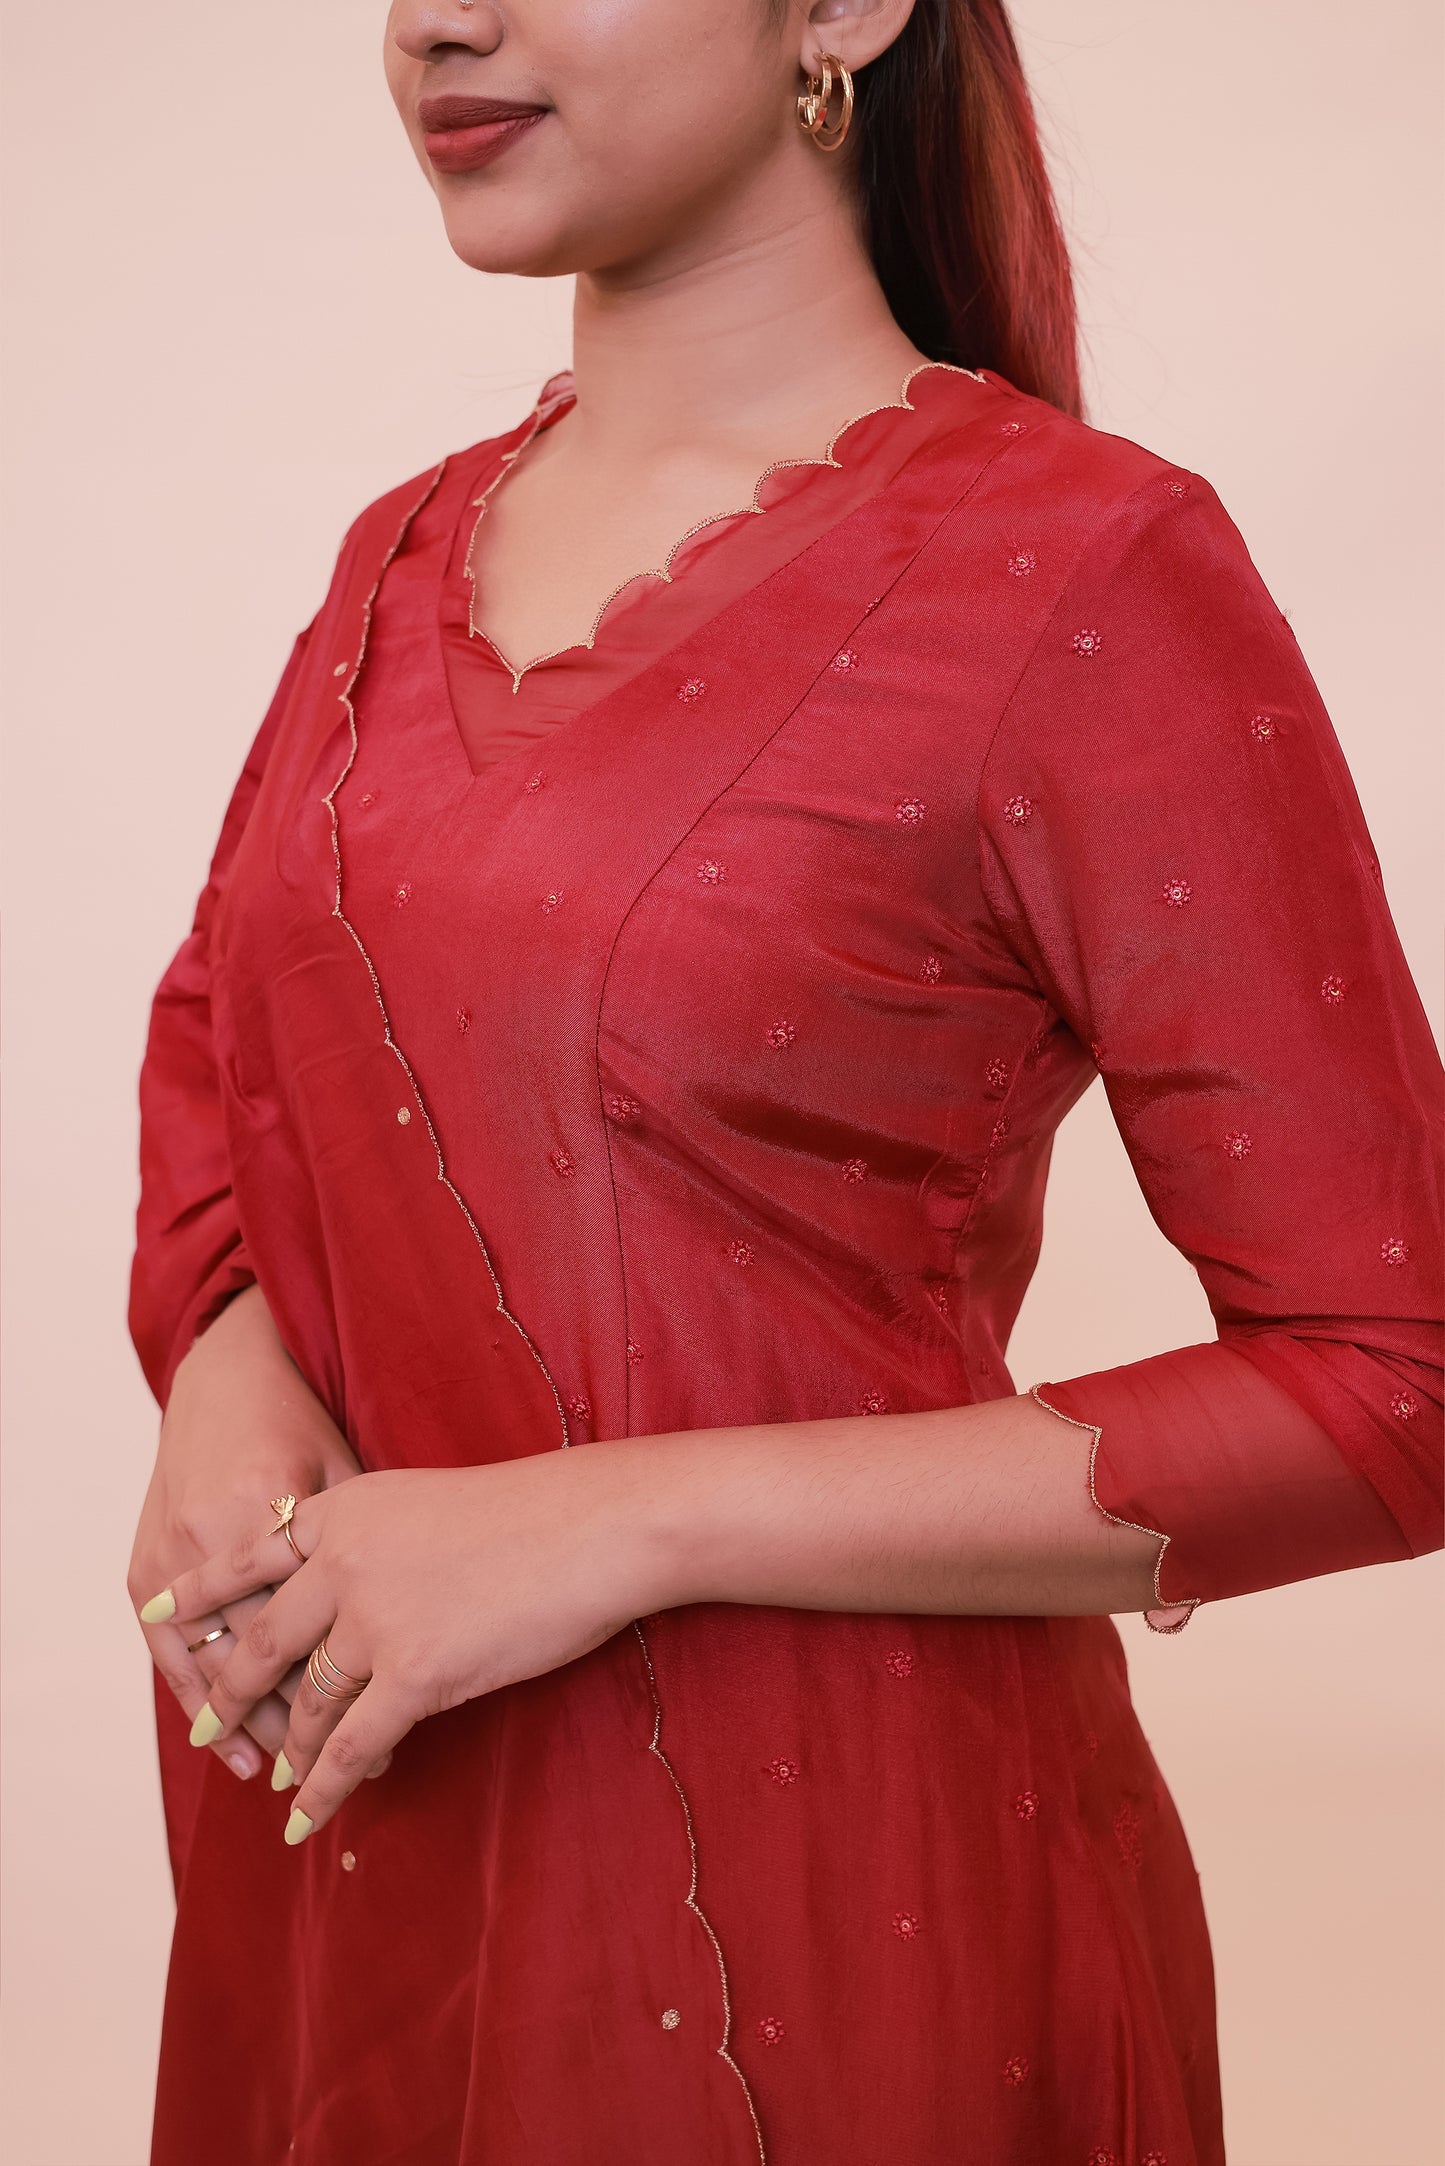 Red georgette dress with organza scallop neckline